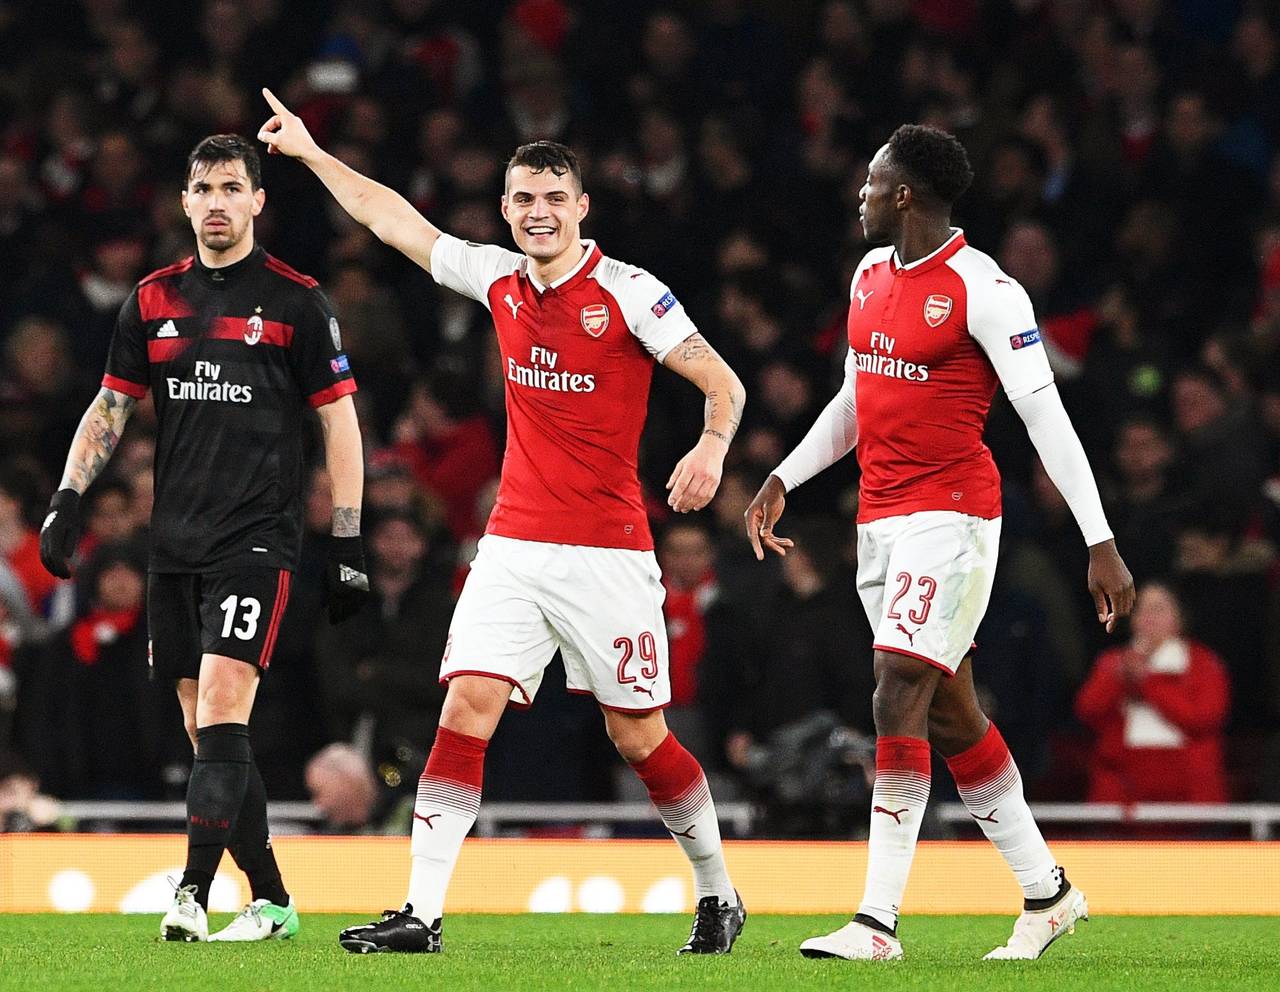 Granit Xhaka (c), de Arsenal, celebra luego de anotar 2-1 ante Milán, durante un partido de la Liga Europa entre Arsenal FC y AC Milán en Londres. (EFE)